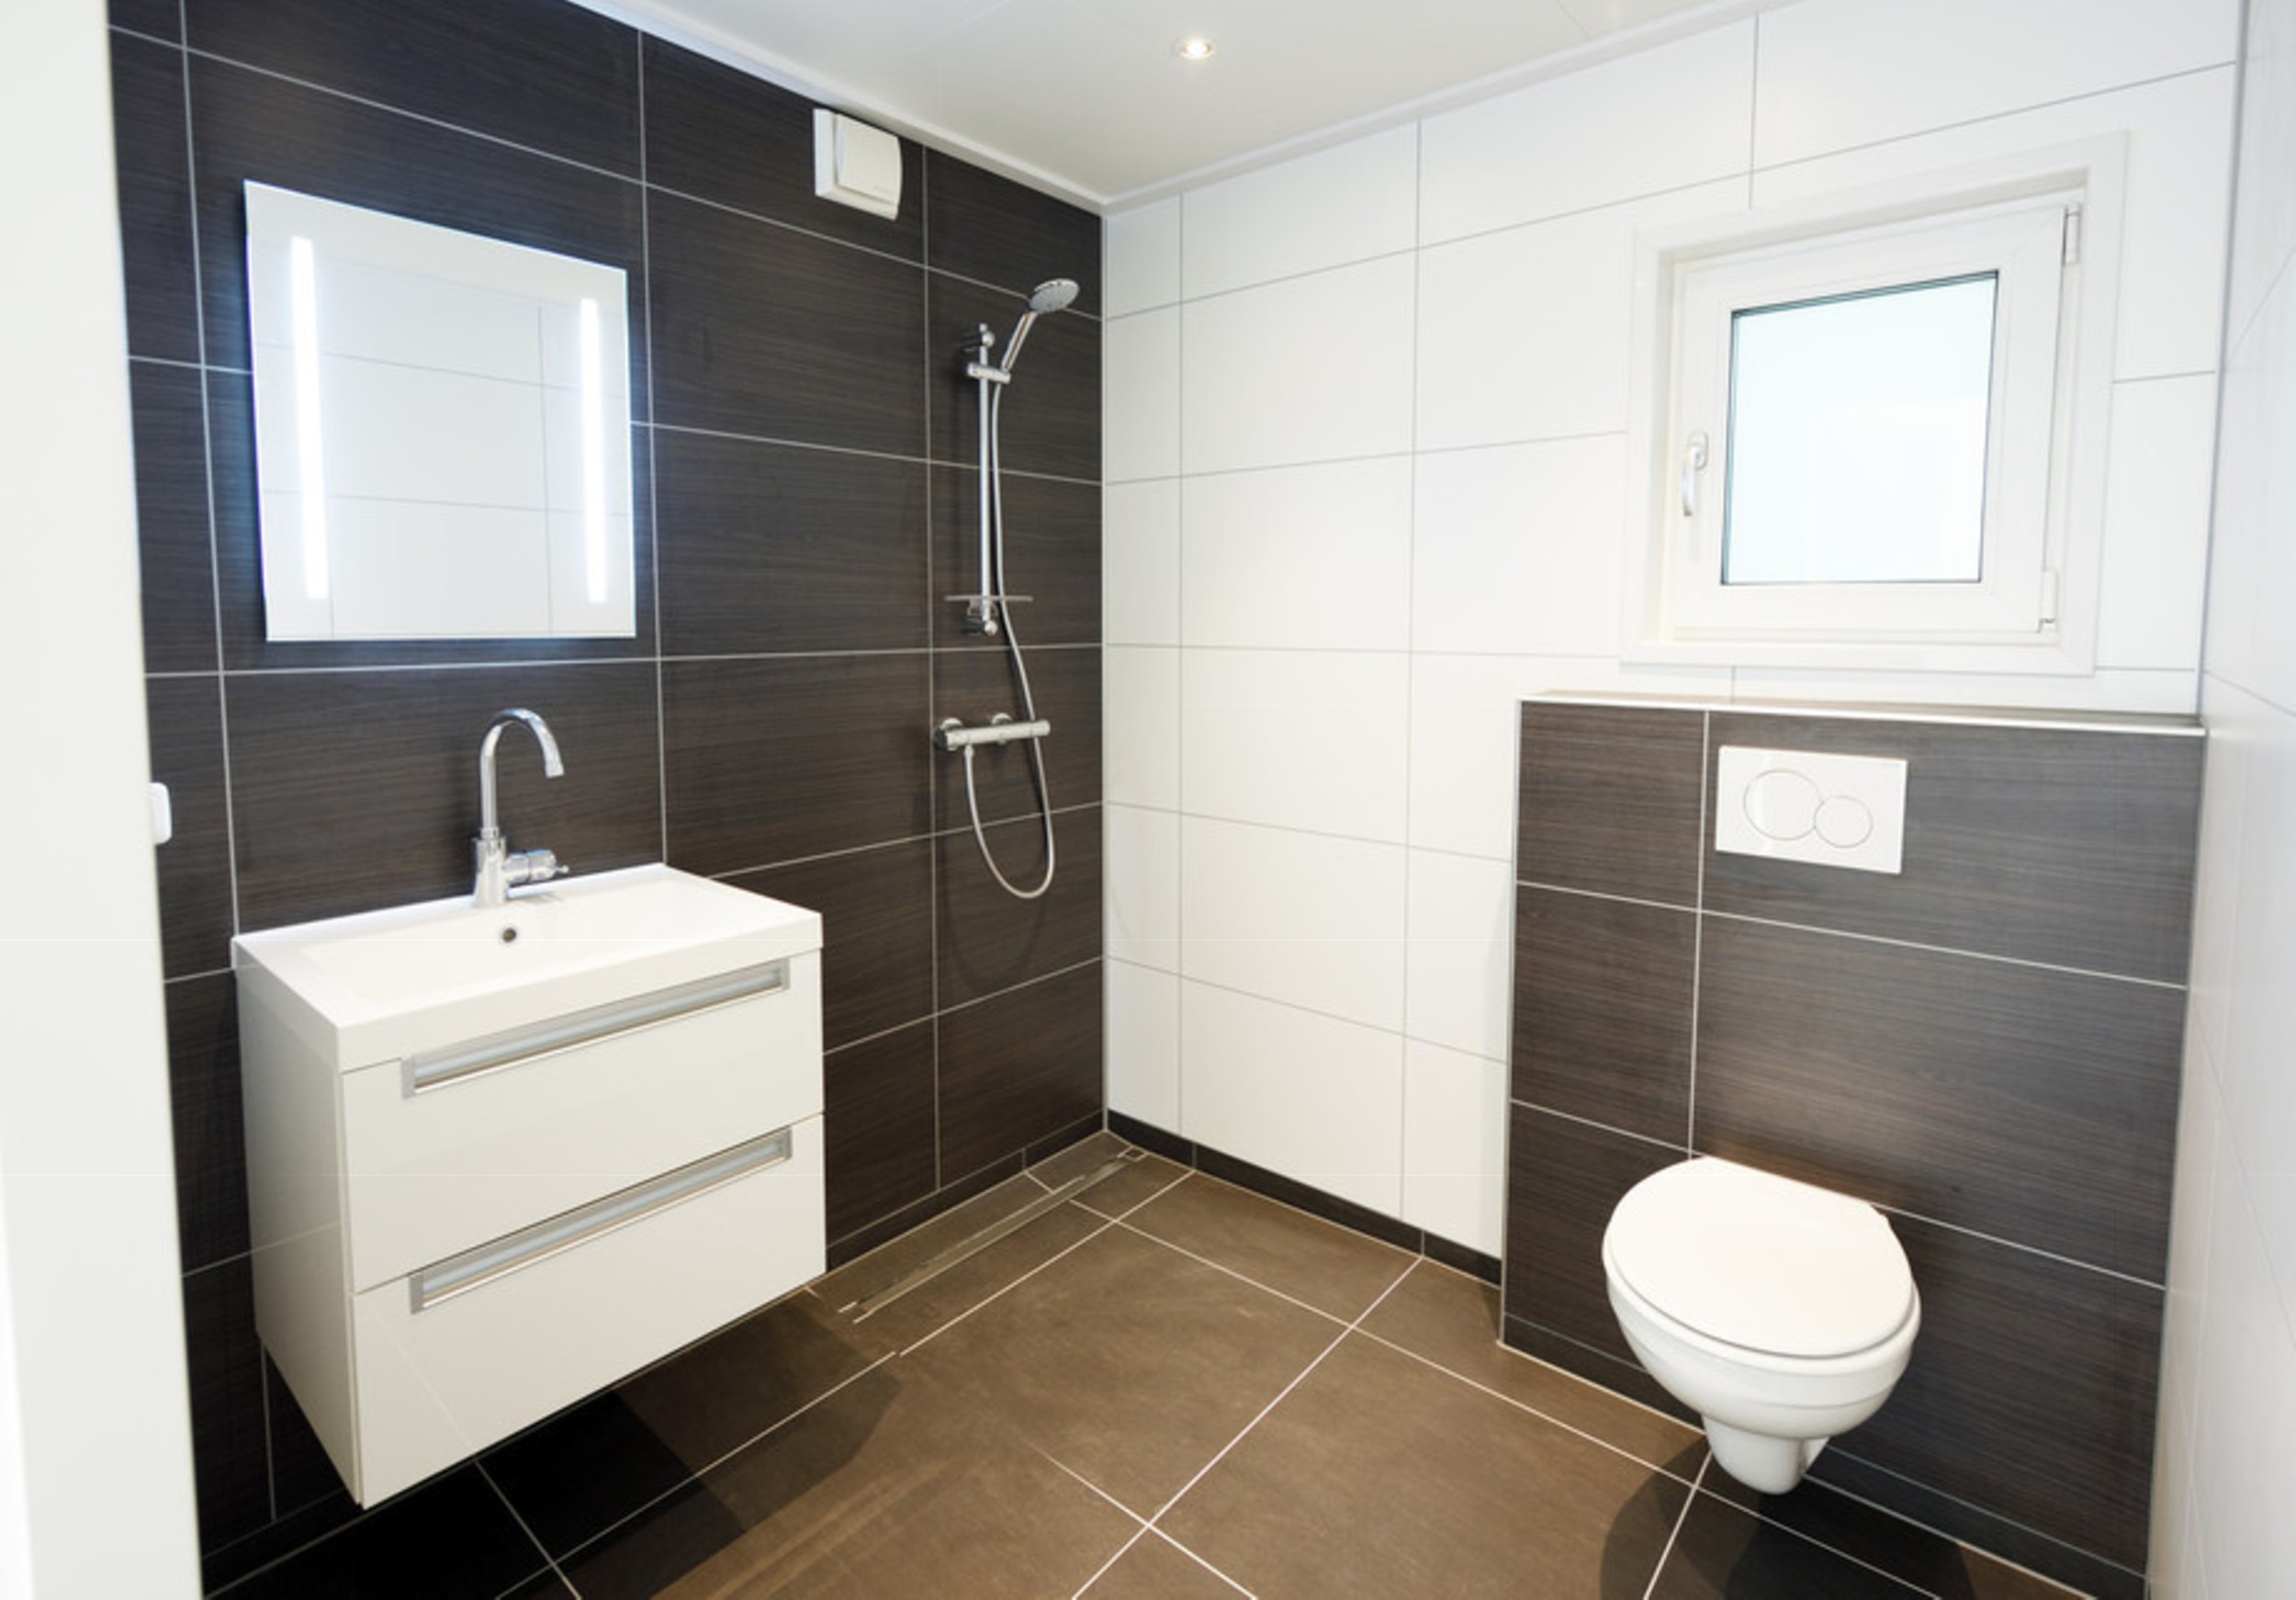 Mobilheim EcoSun Badezimmer mit Badezimmermöbel und Hänge-WC